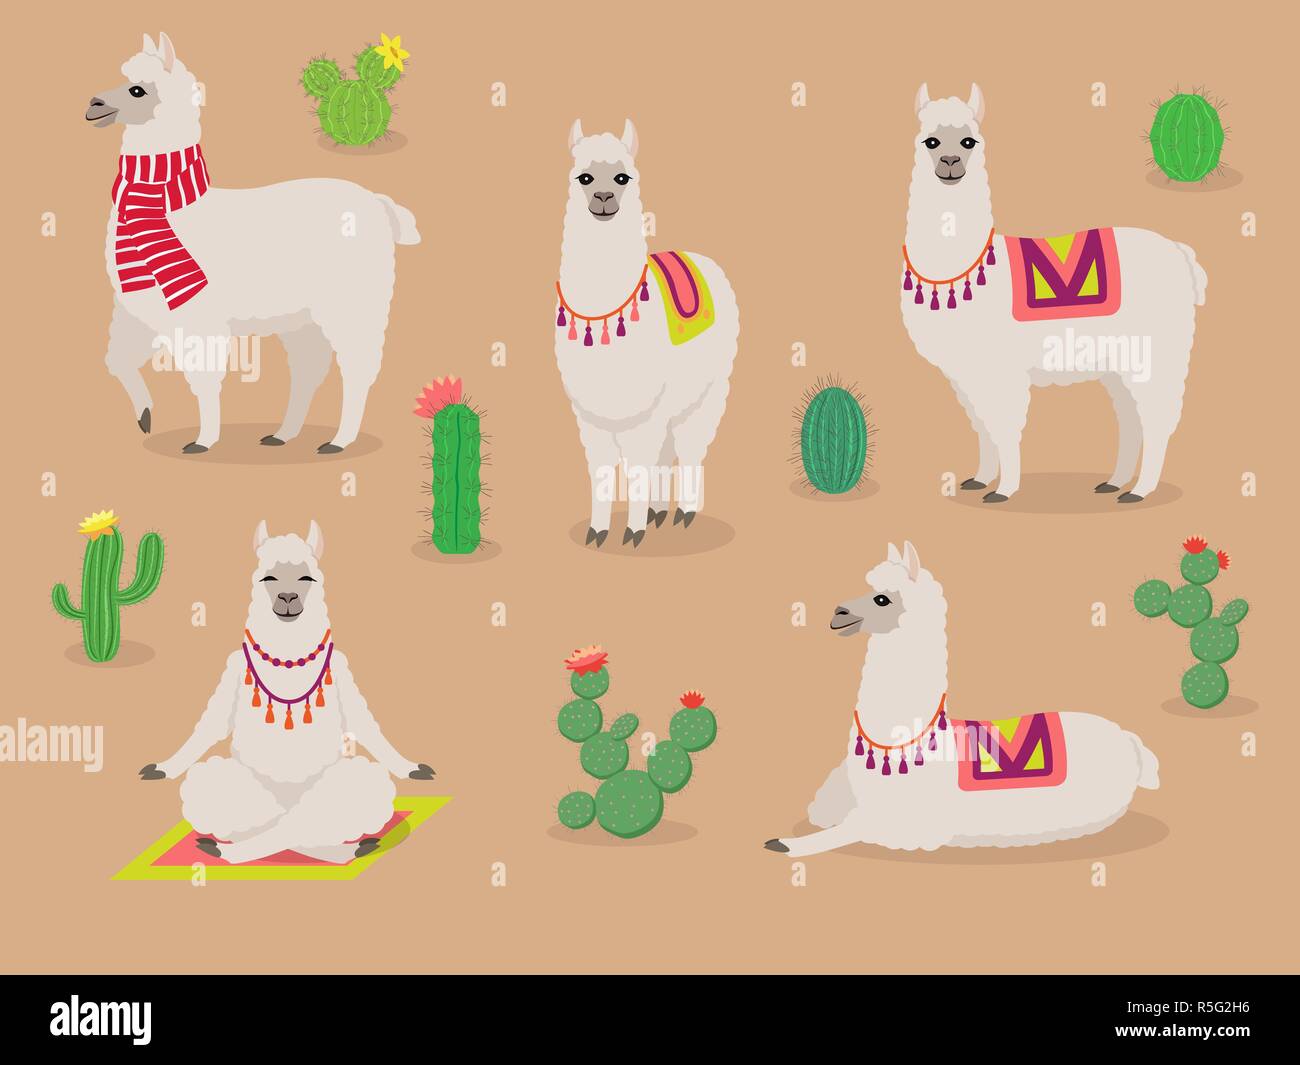 Jeu de cute lamas dans différentes poses, avec cactus du désert Illustration de Vecteur